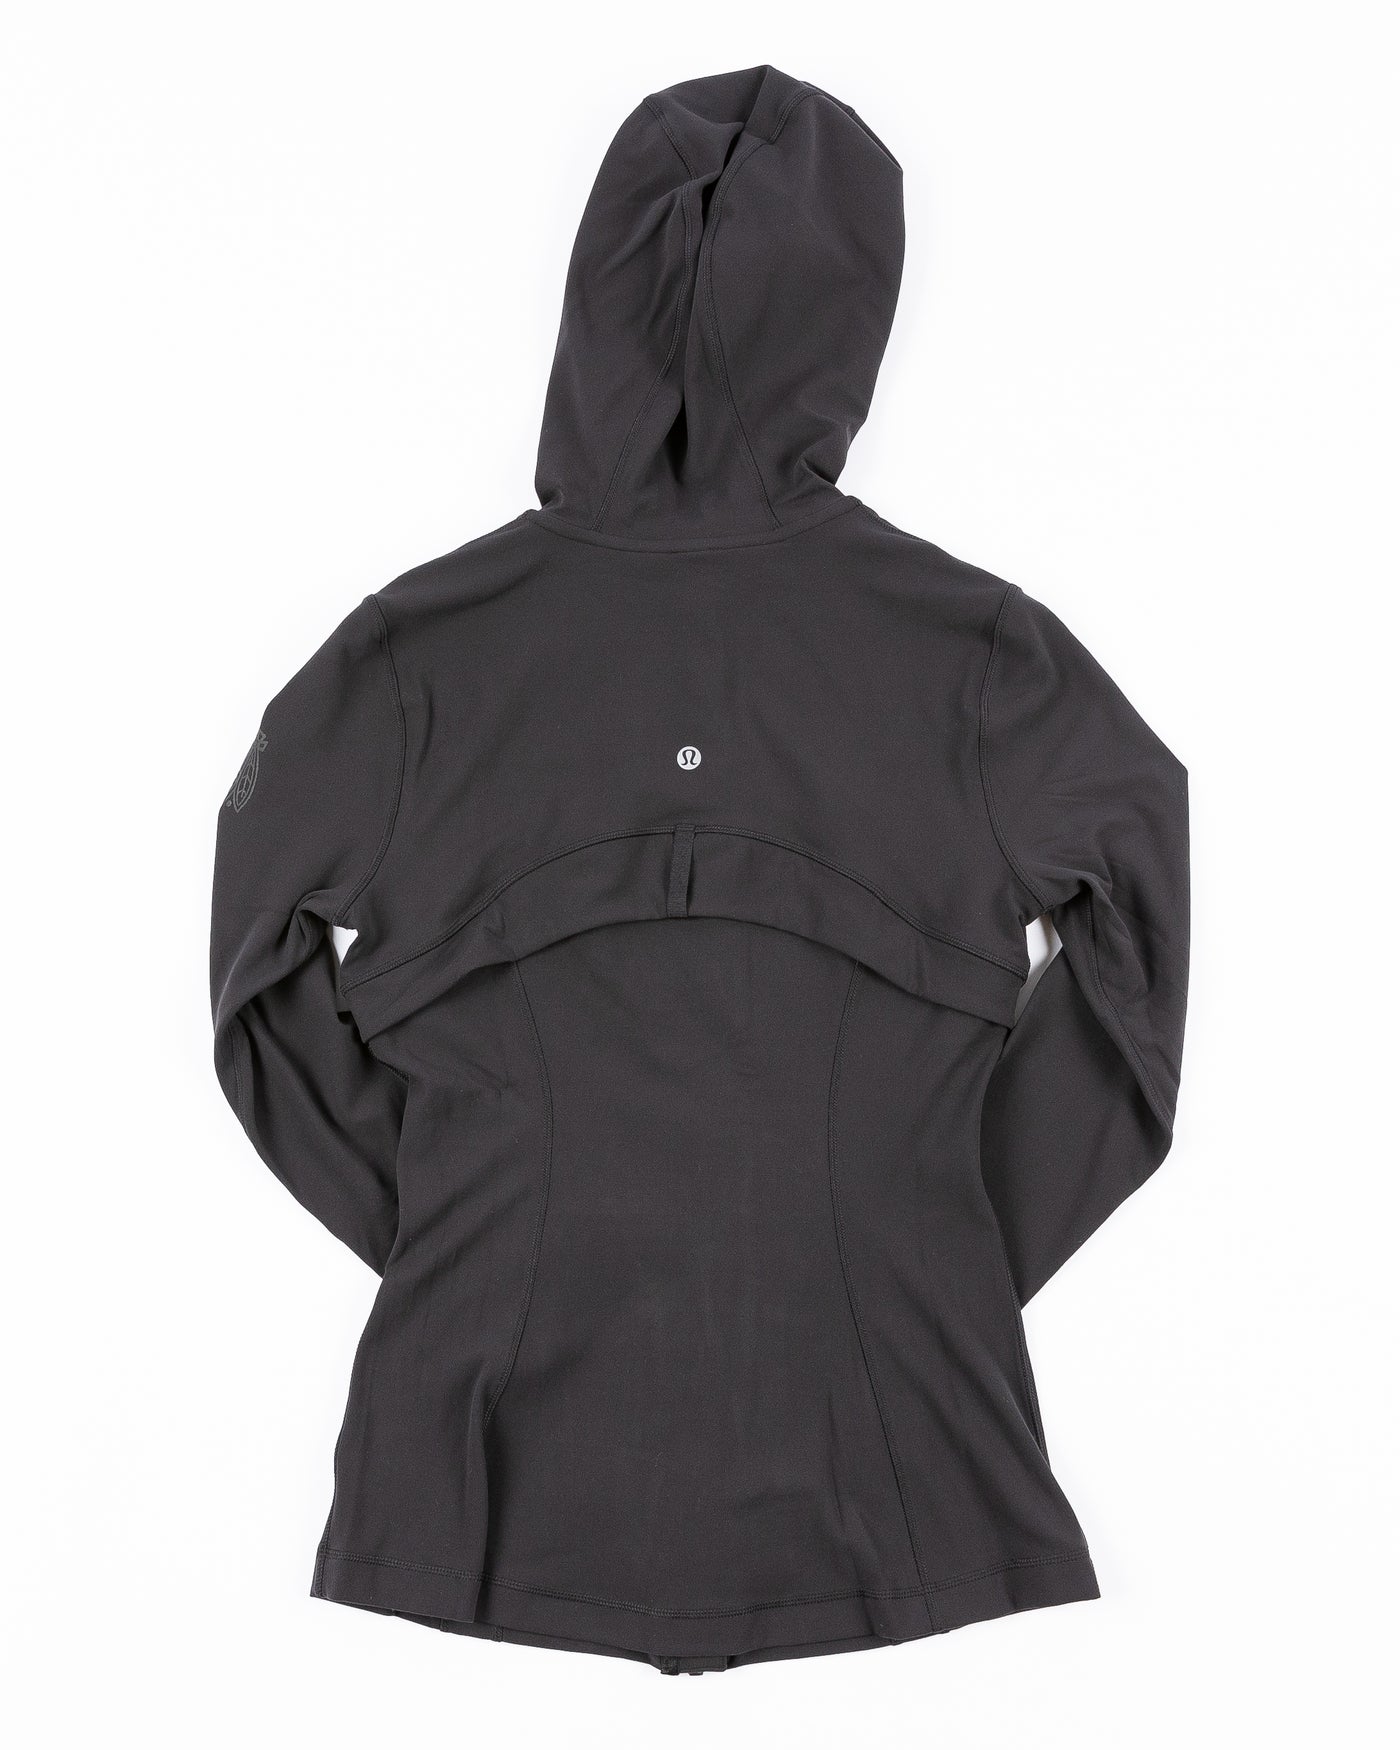 black lululemon hooded jacket with tonal Chicago Blackhawks logo printed on left shoulder - back lay flat